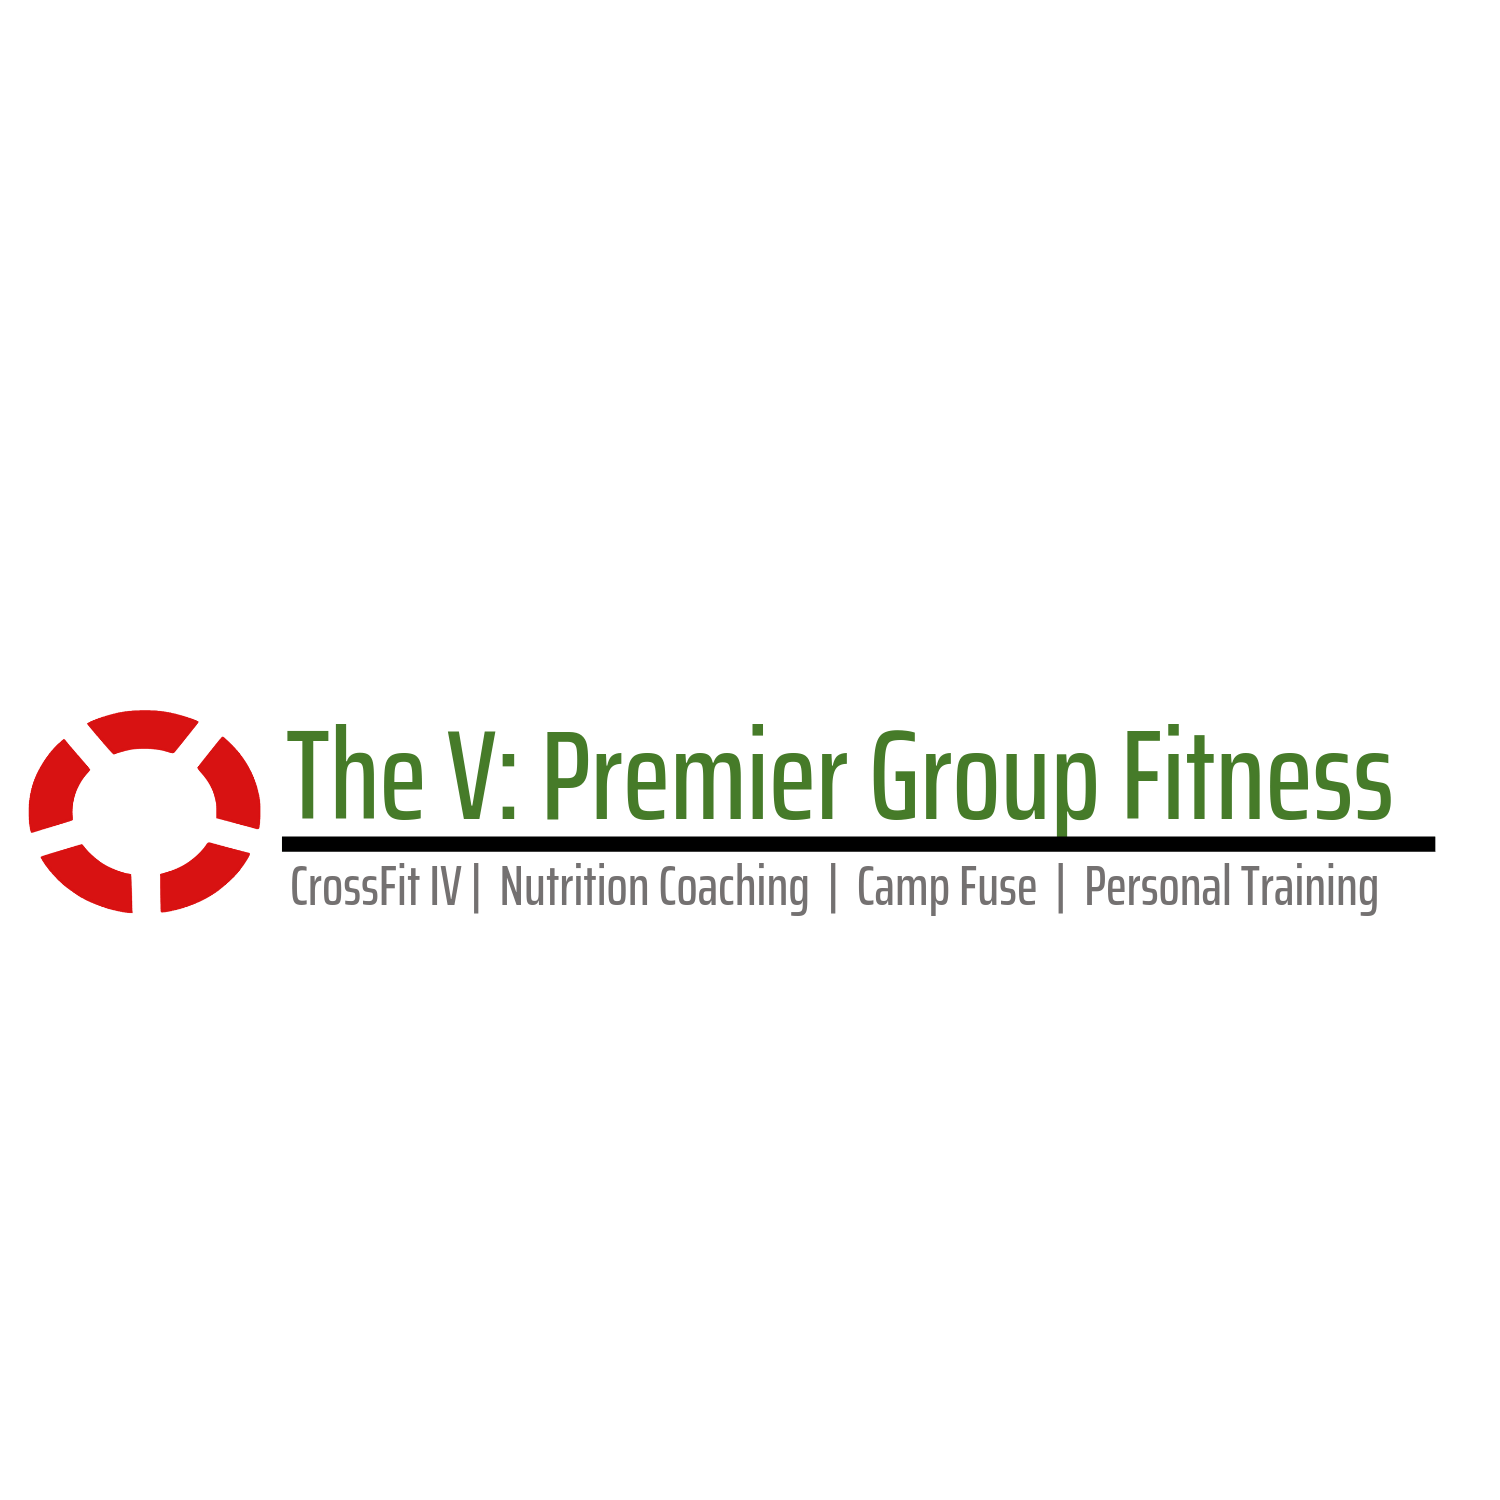 The V: Premier Group Fitness